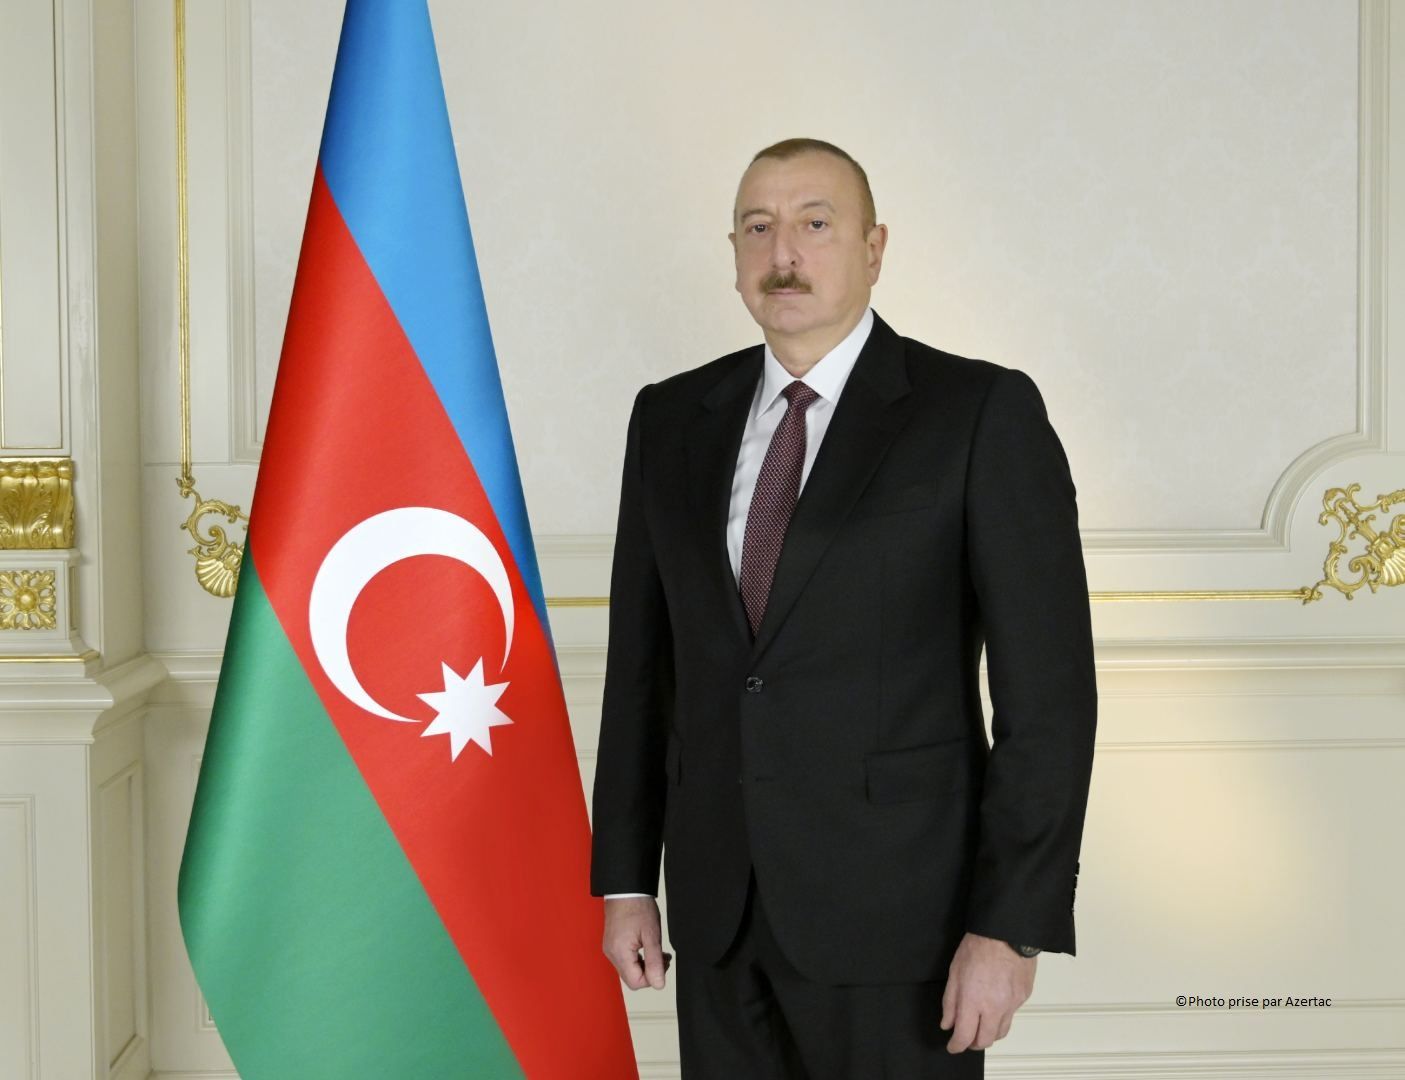 Le président Ilham Aliyev présente ses vœux aux Azerbaïdjanais pour l’Aïd el-Kébir